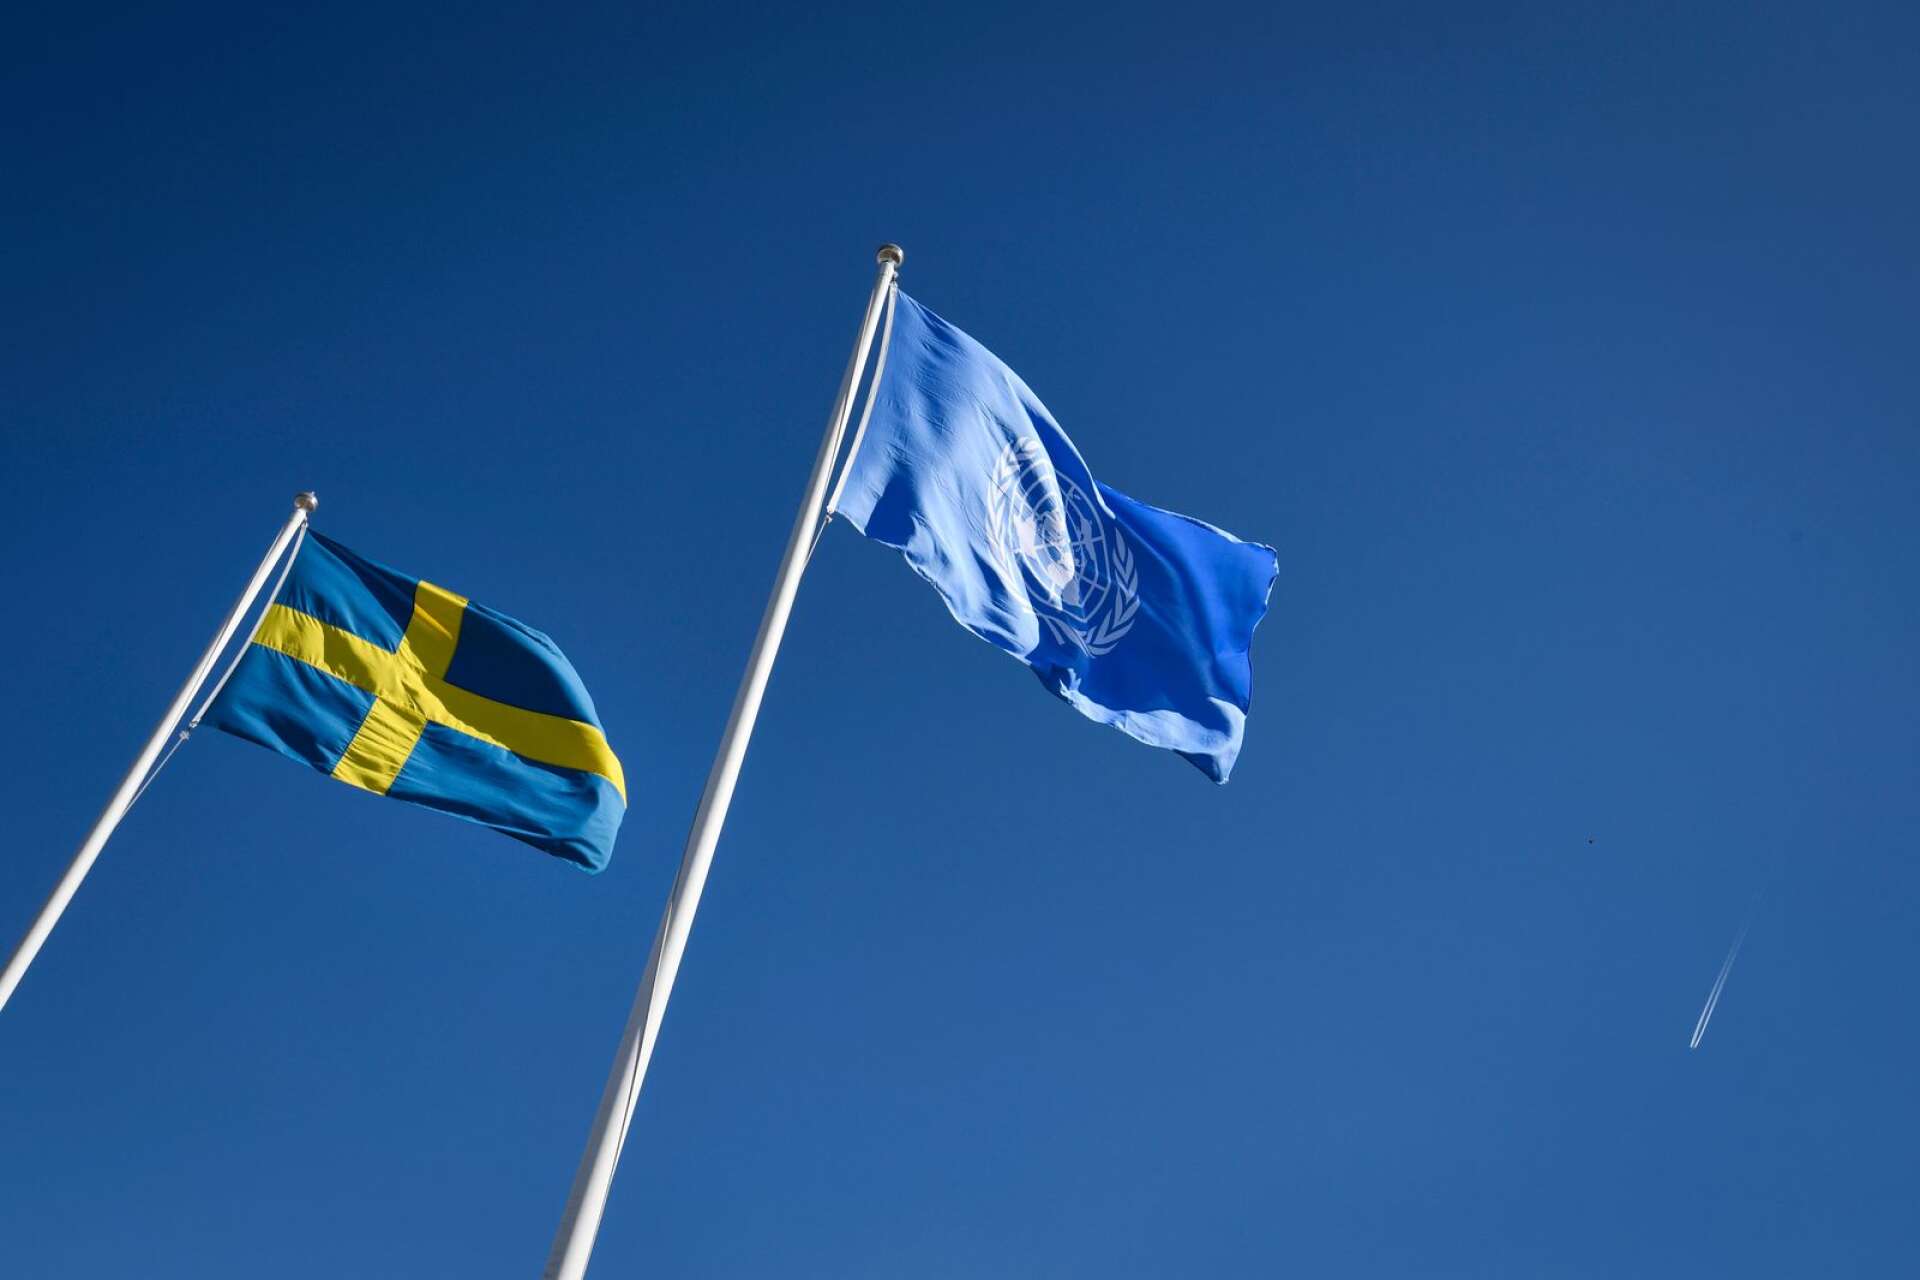 Ett starkt FN och en stark svensk röst i FN krävs mer än någonsin för att hantera utmaningarna i vår omvärld och värna vår och andras fred och frihet, skriver Annelie Börjesson med flera.